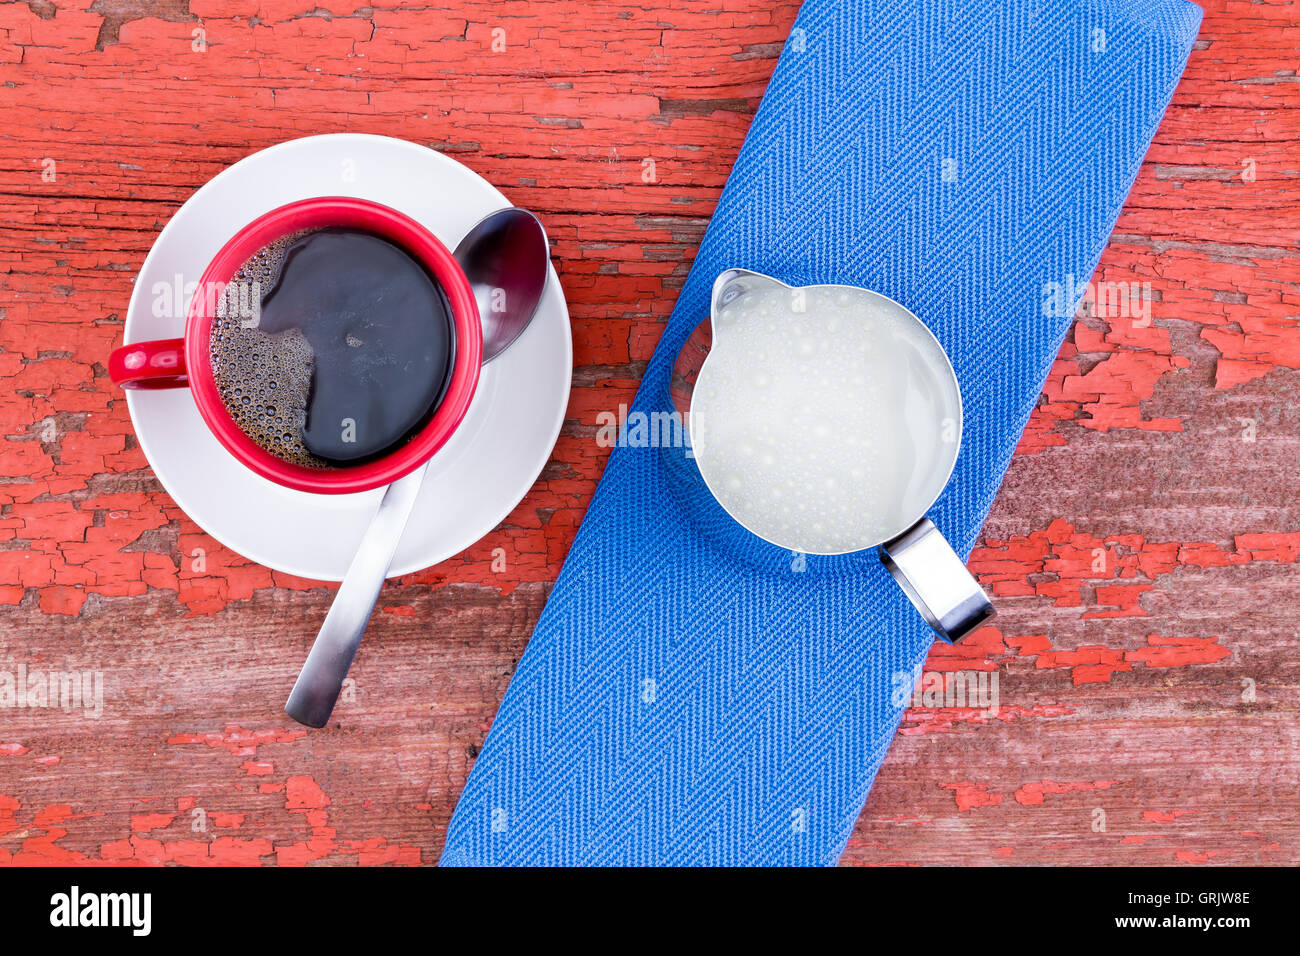 Fraîchement préparée et tasse de café noir dans une tasse rouge sur une soucoupe blanc servi avec un pichet de lait et sur une serviette bleu grunge r en bois Banque D'Images